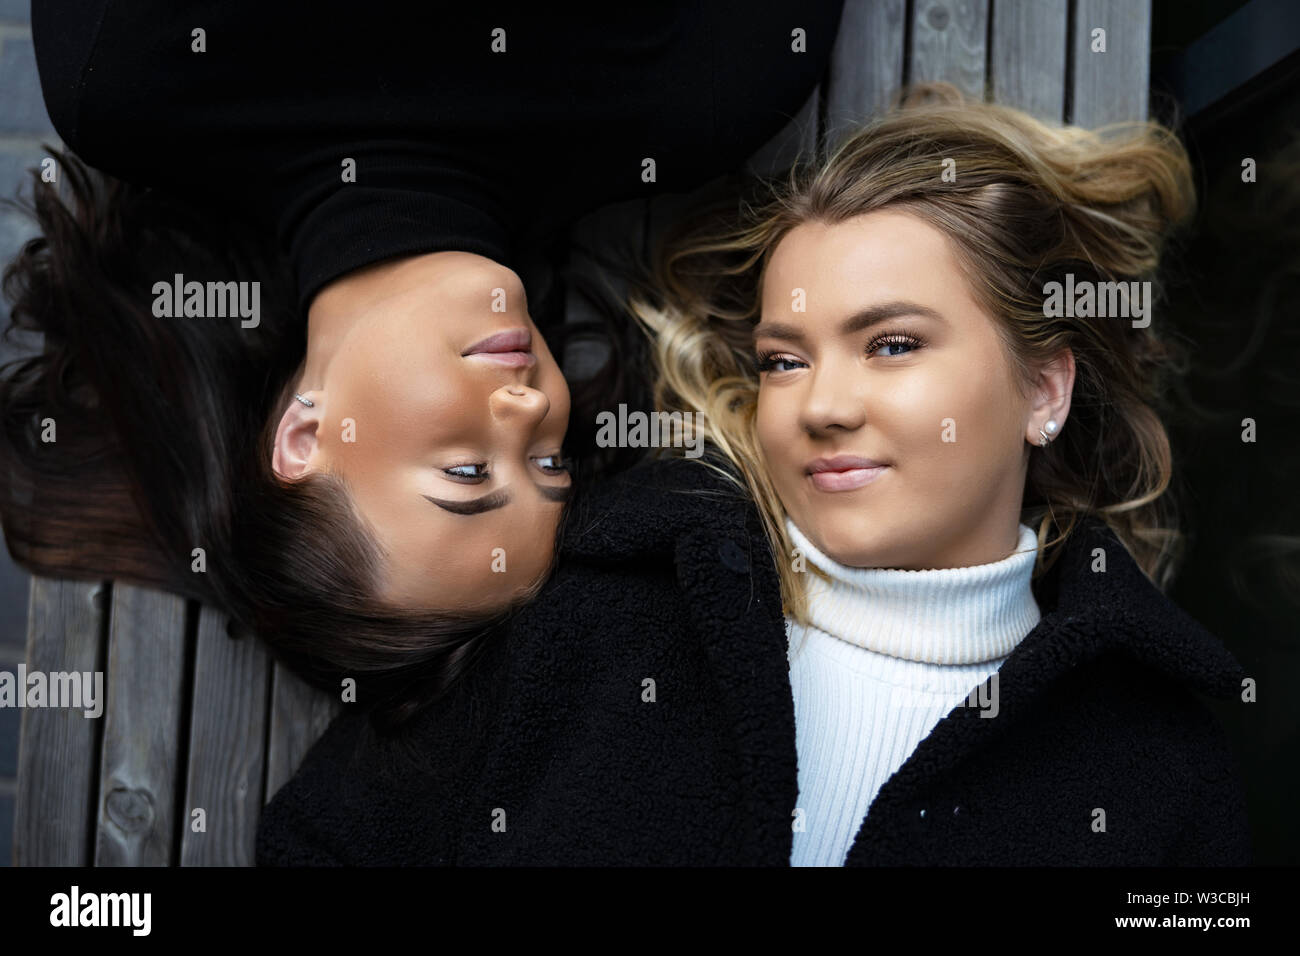 Close-up retrato de dos mejores amigos sonriente tumbado sobre un banco de trabajo Foto de stock